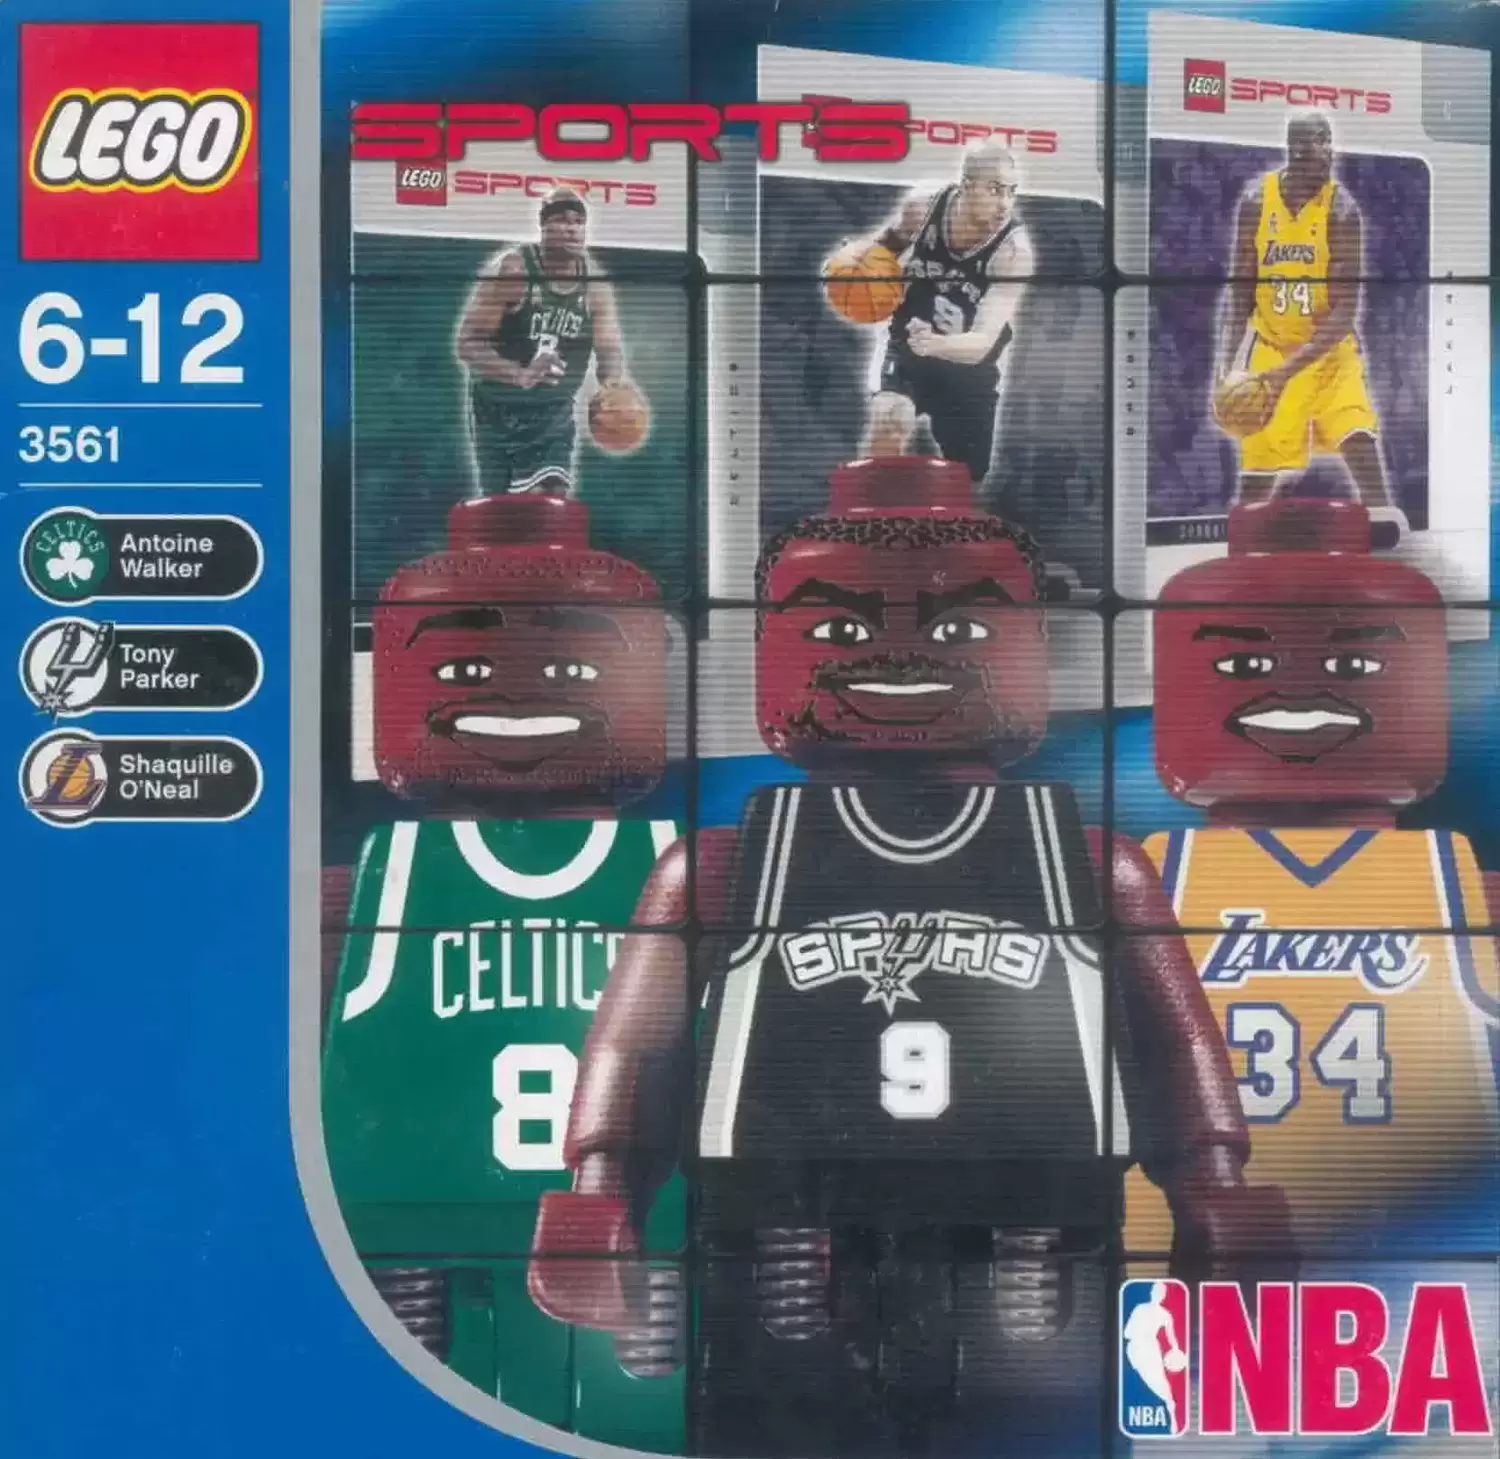 NBA Collectors # 2 - LEGO Sports set 3561